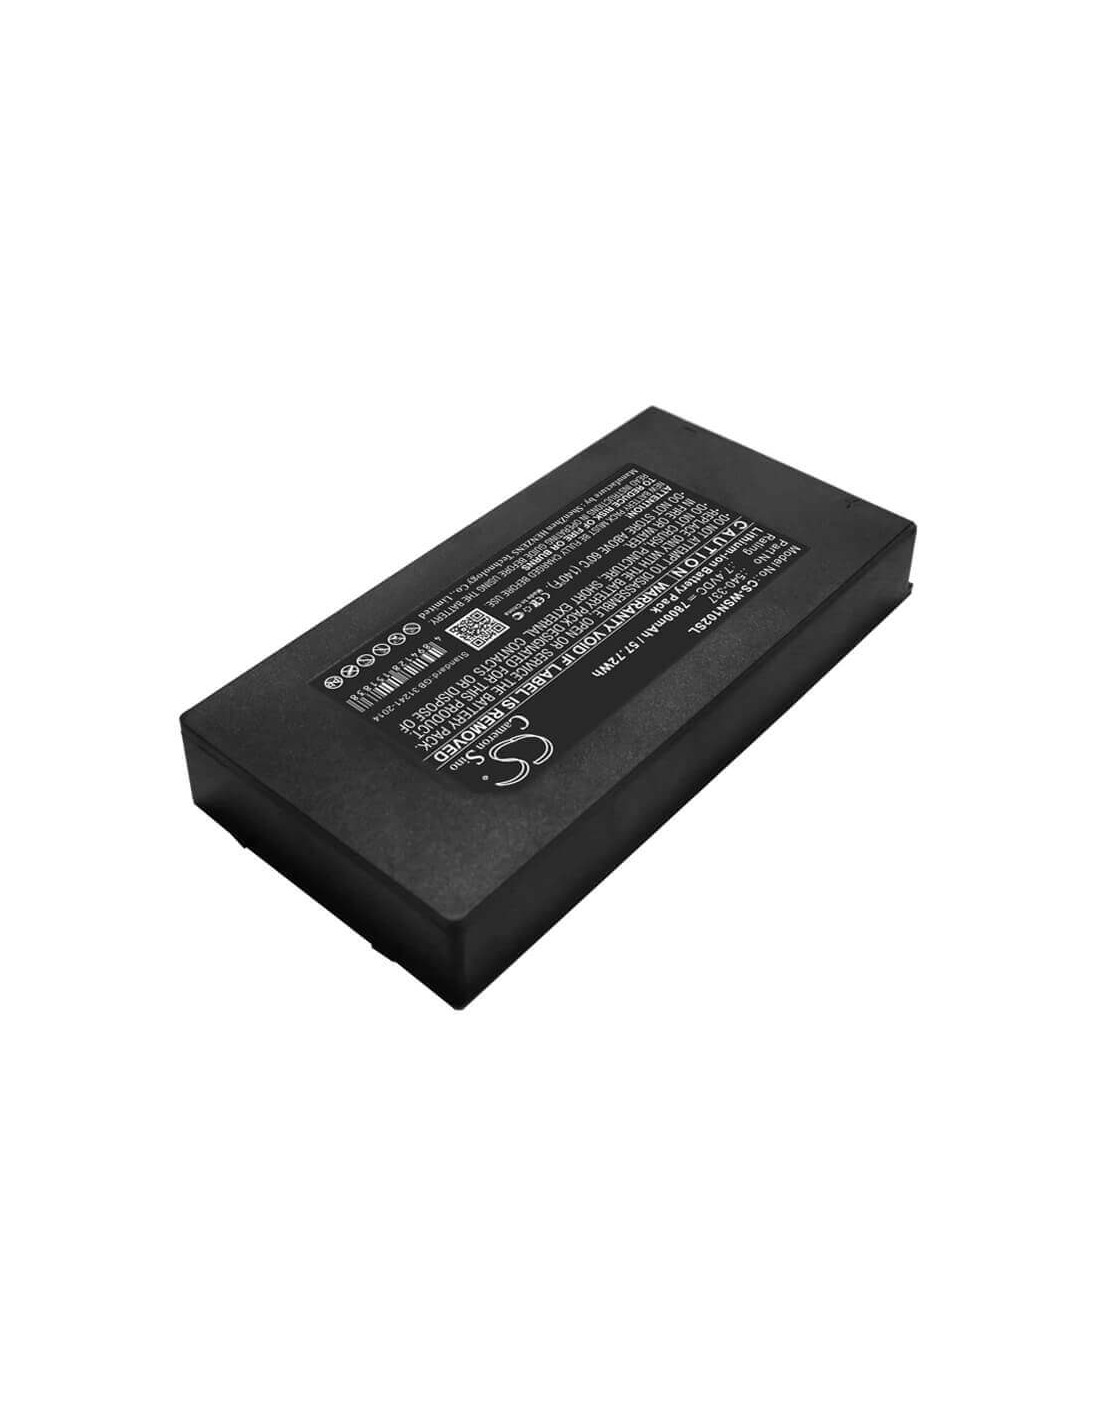 Battery for Owon, B-8000, Hc-pds, Oscilloscopes Hc-pds 7.4V, 7800mAh - 57.72Wh